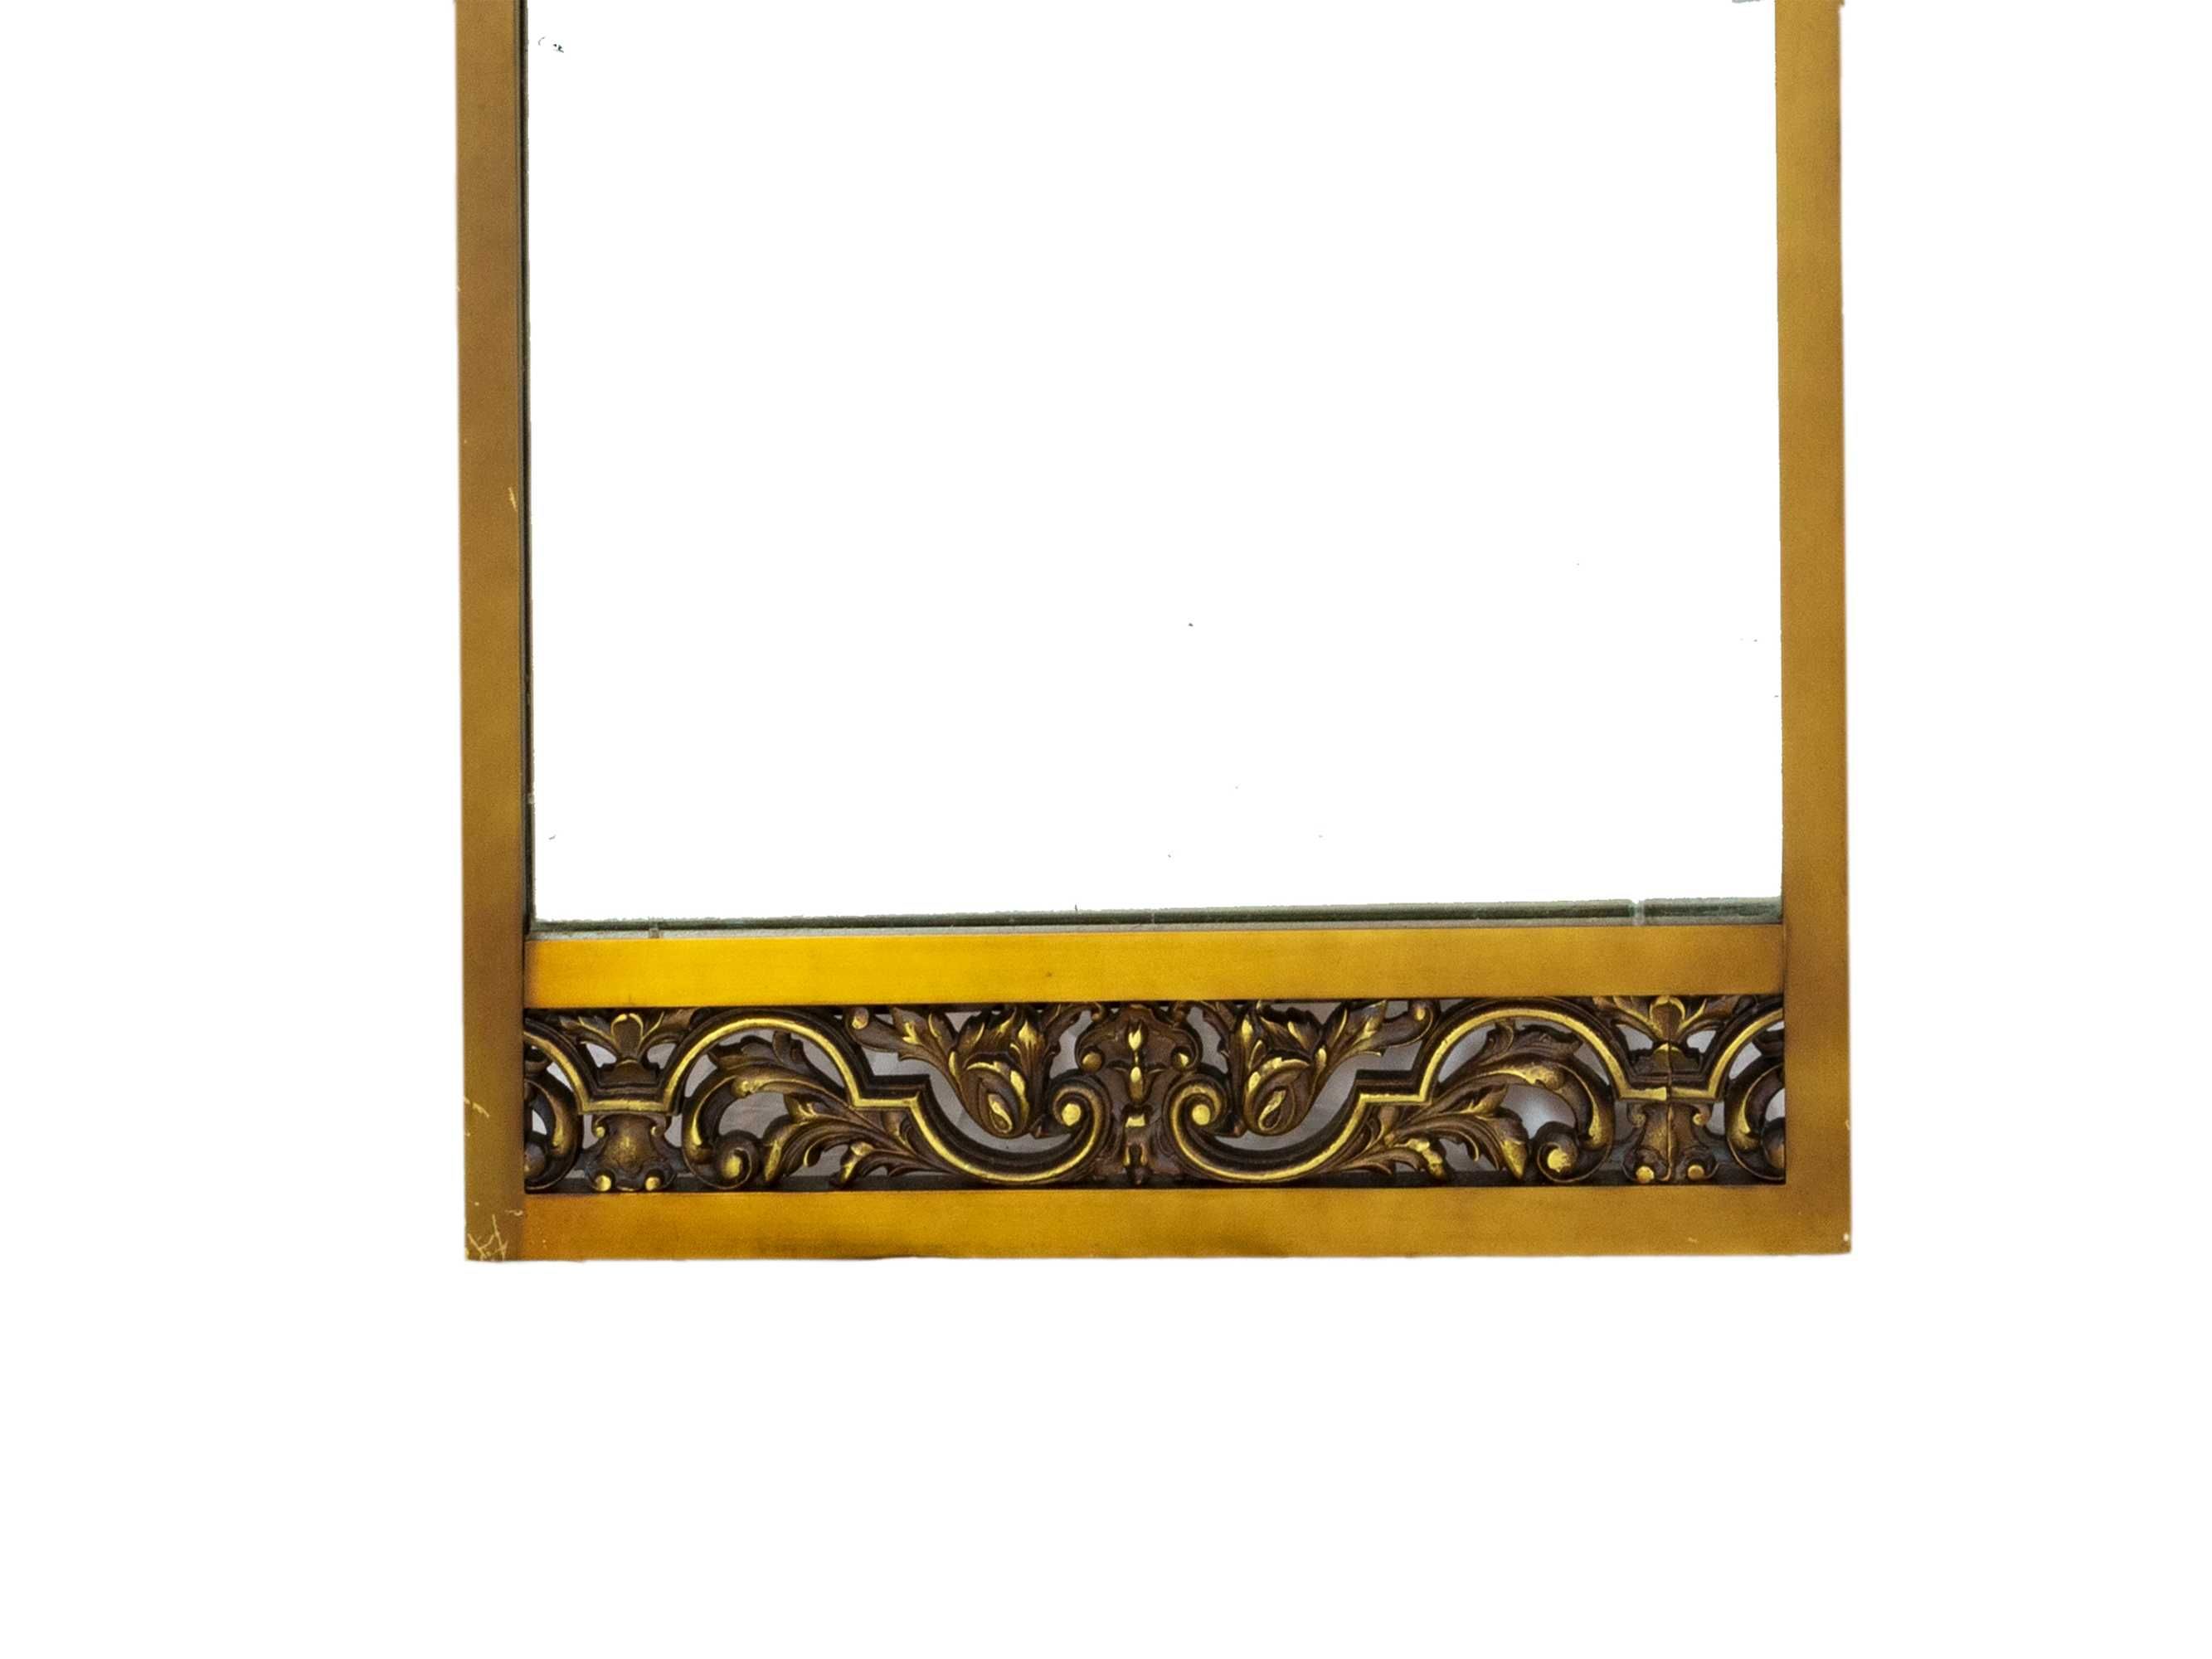 Espelho bronze dourado moderno | Luís XV